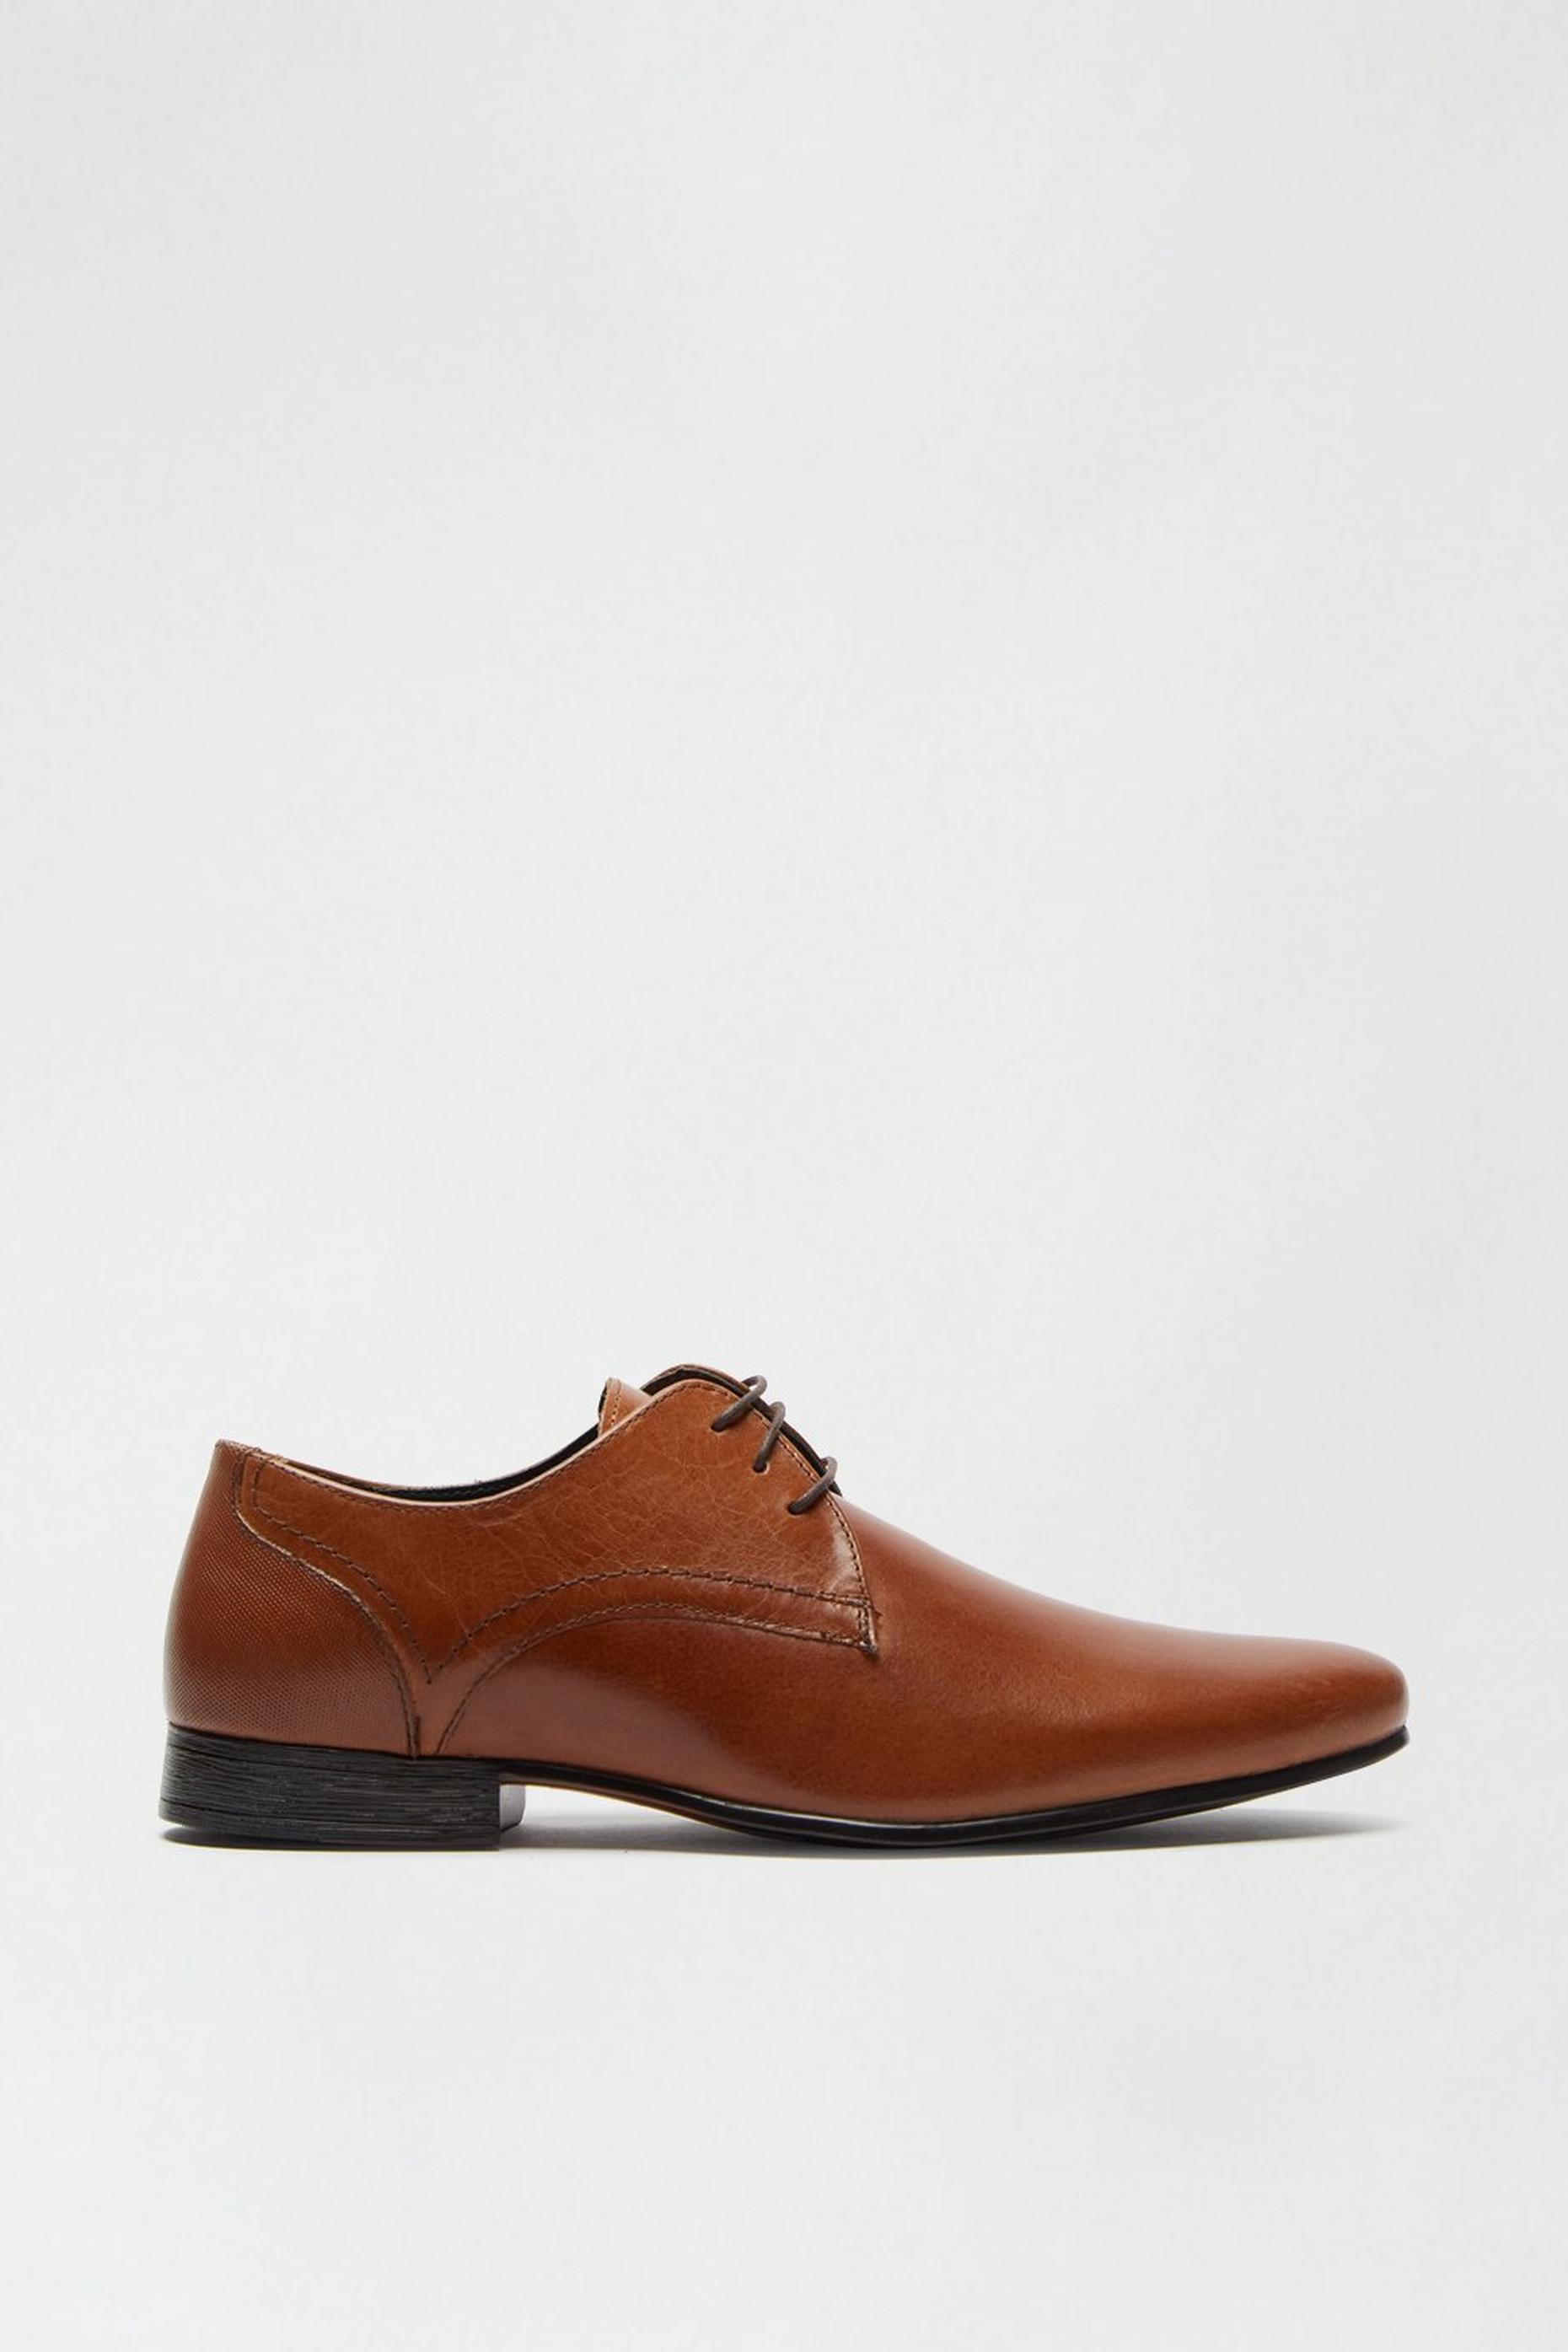 Men's Shoes | Casual & Formal Shoes | Burton